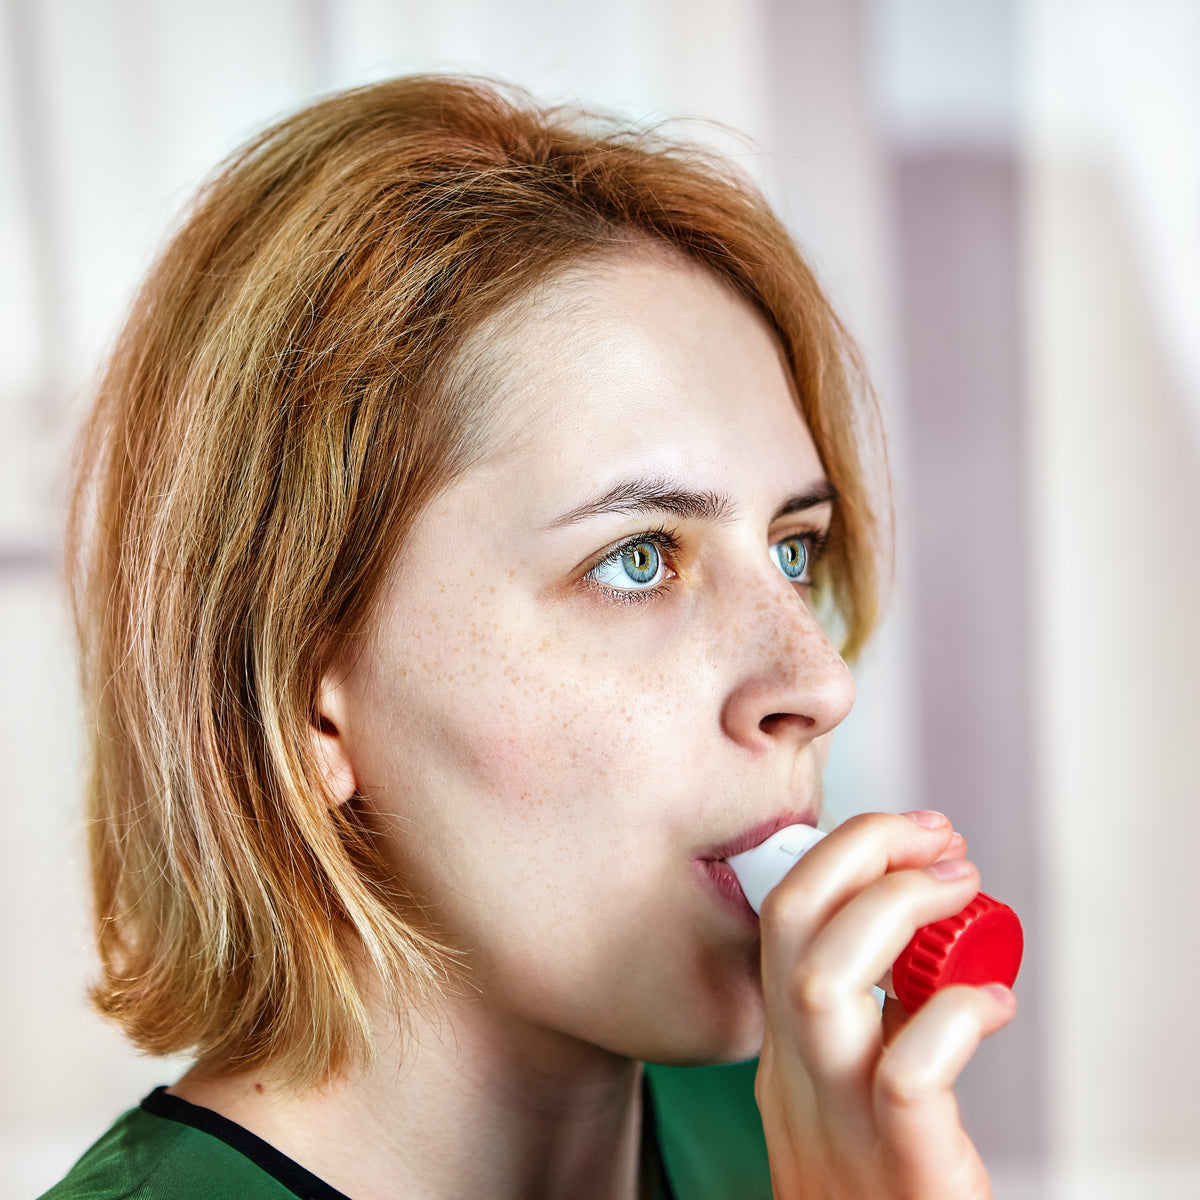 A woman using an inhaler